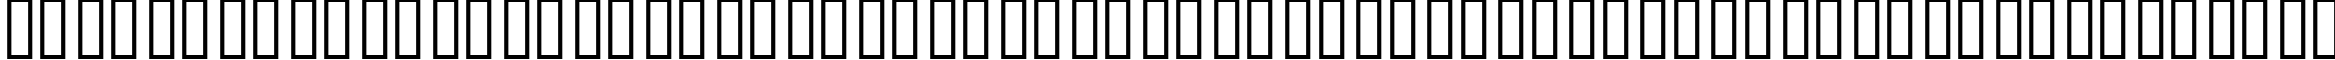 Пример написания русского алфавита шрифтом SKYfontone